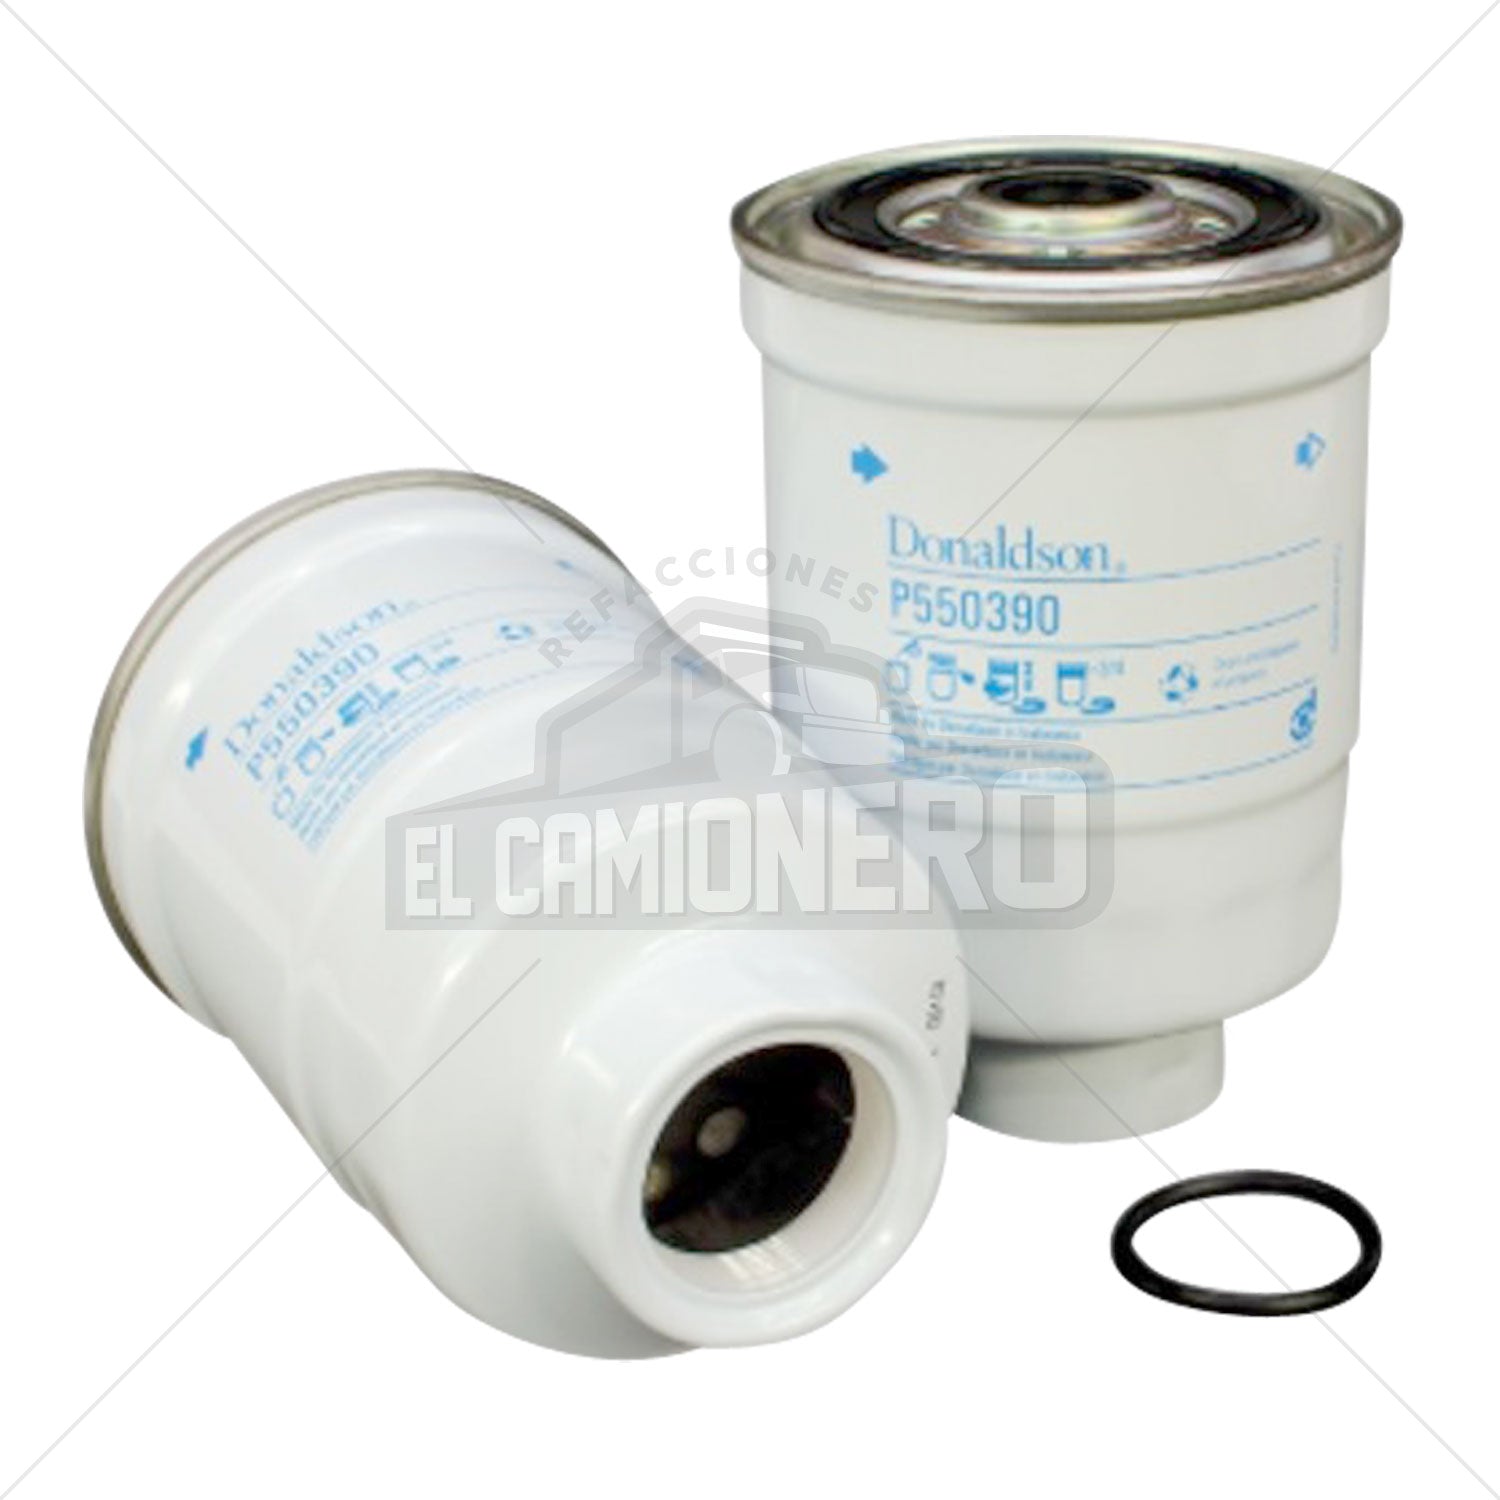 Filtro de combustible separador de agua Donaldson P550390